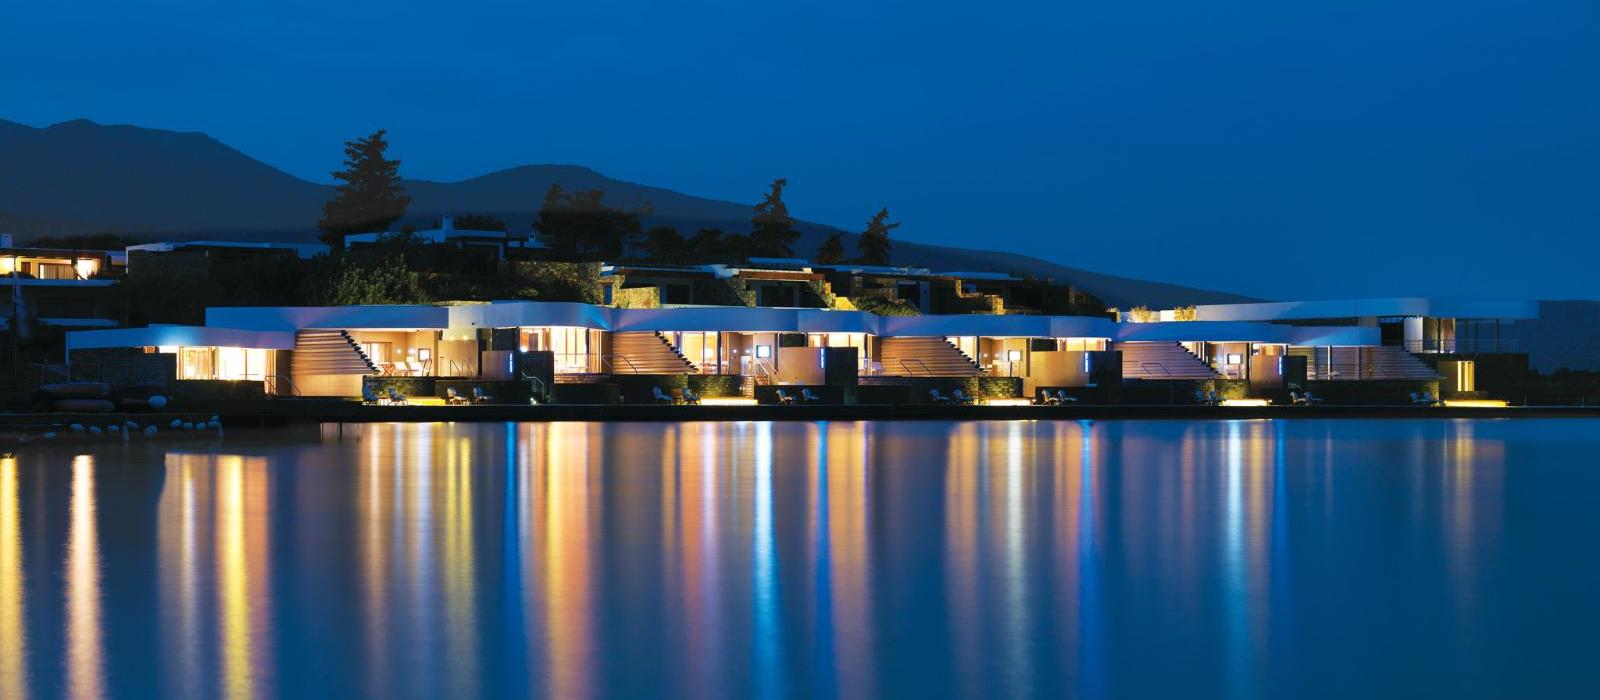 埃朗达海滩度假酒店(Elounda Beach Hotel & Villas) 图片  www.lhw.cn